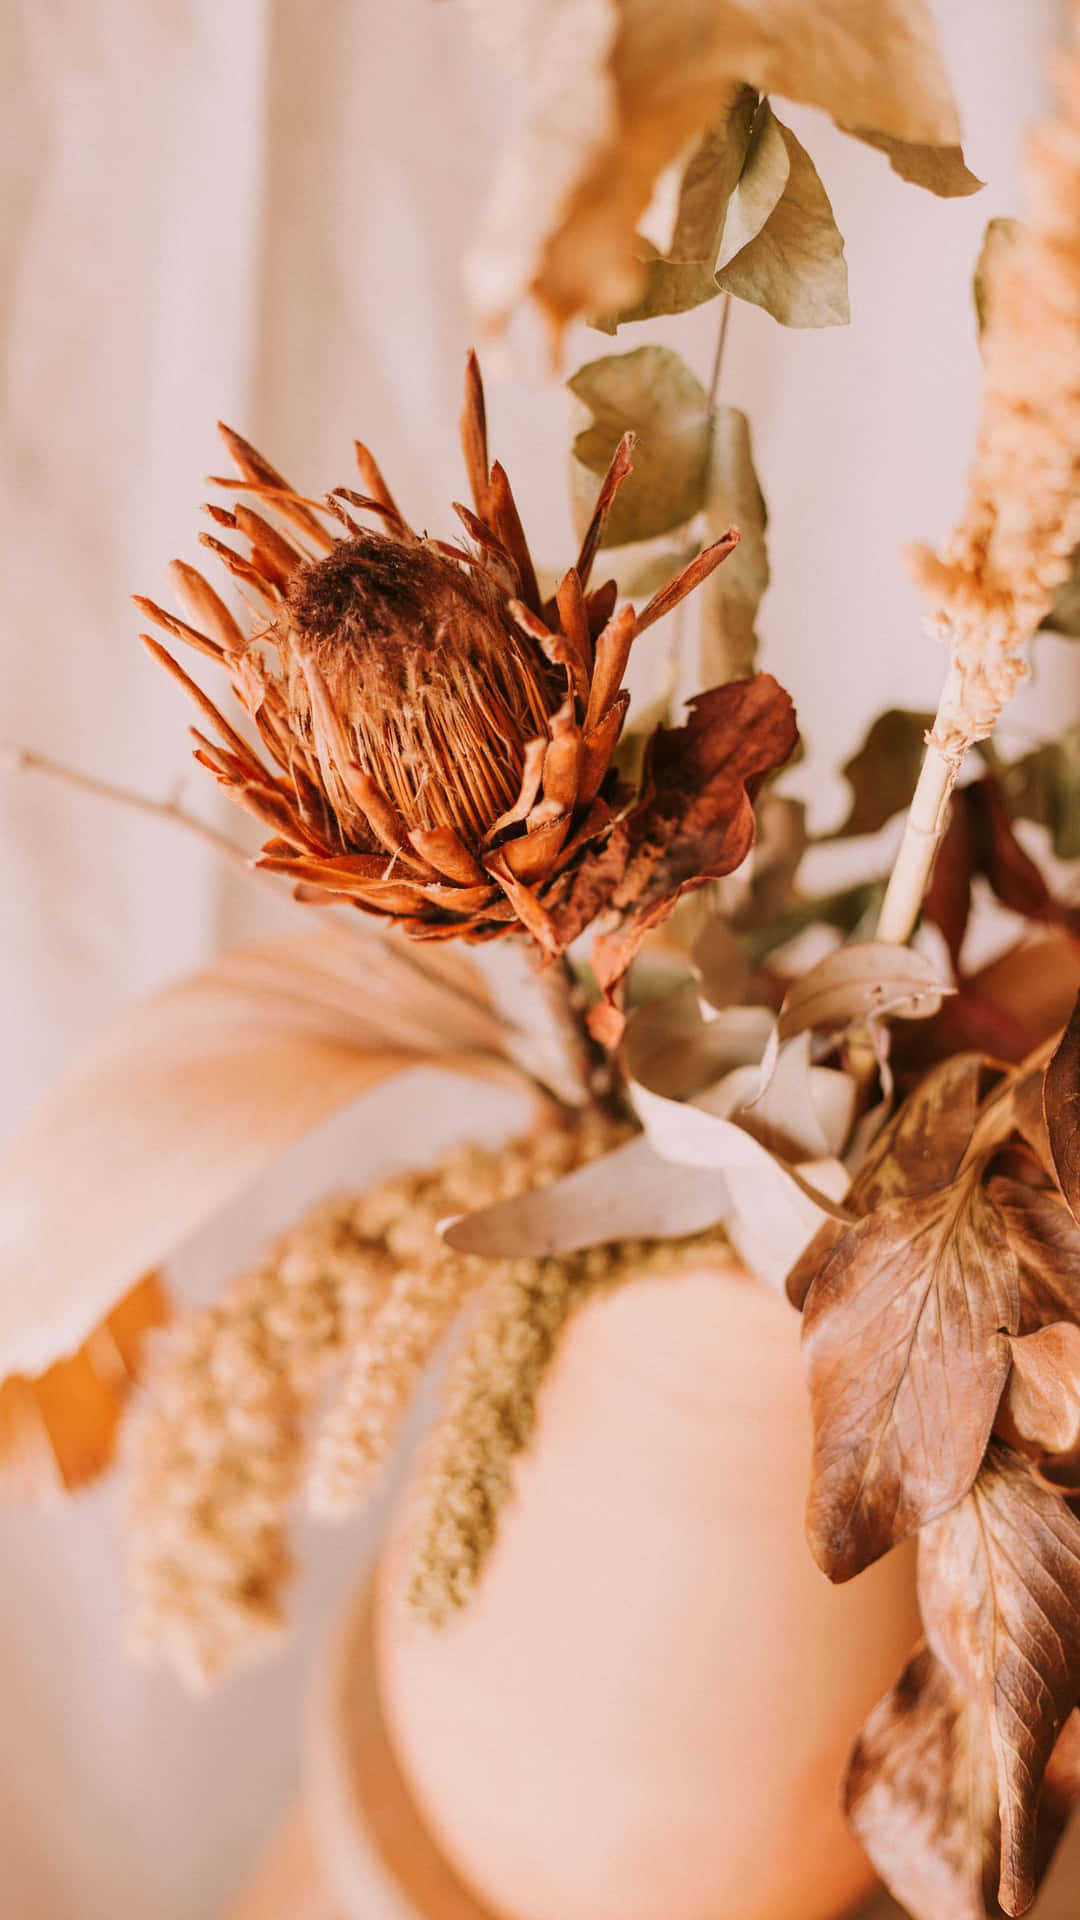 Caption: Elegant Arrangement of Colorful Dried Flowers Wallpaper